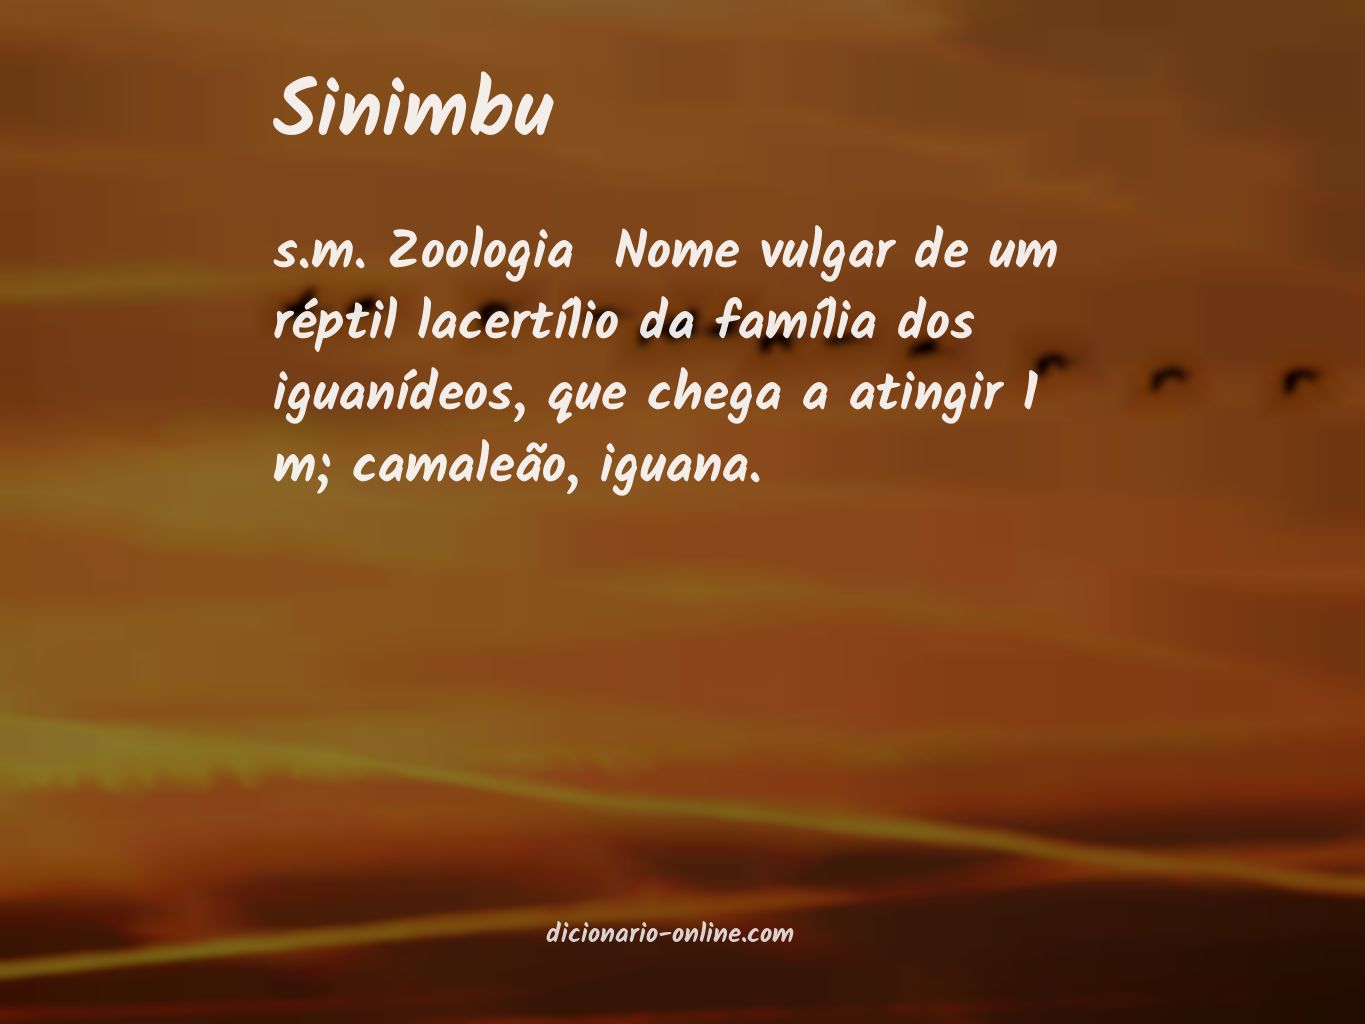 Significado de sinimbu